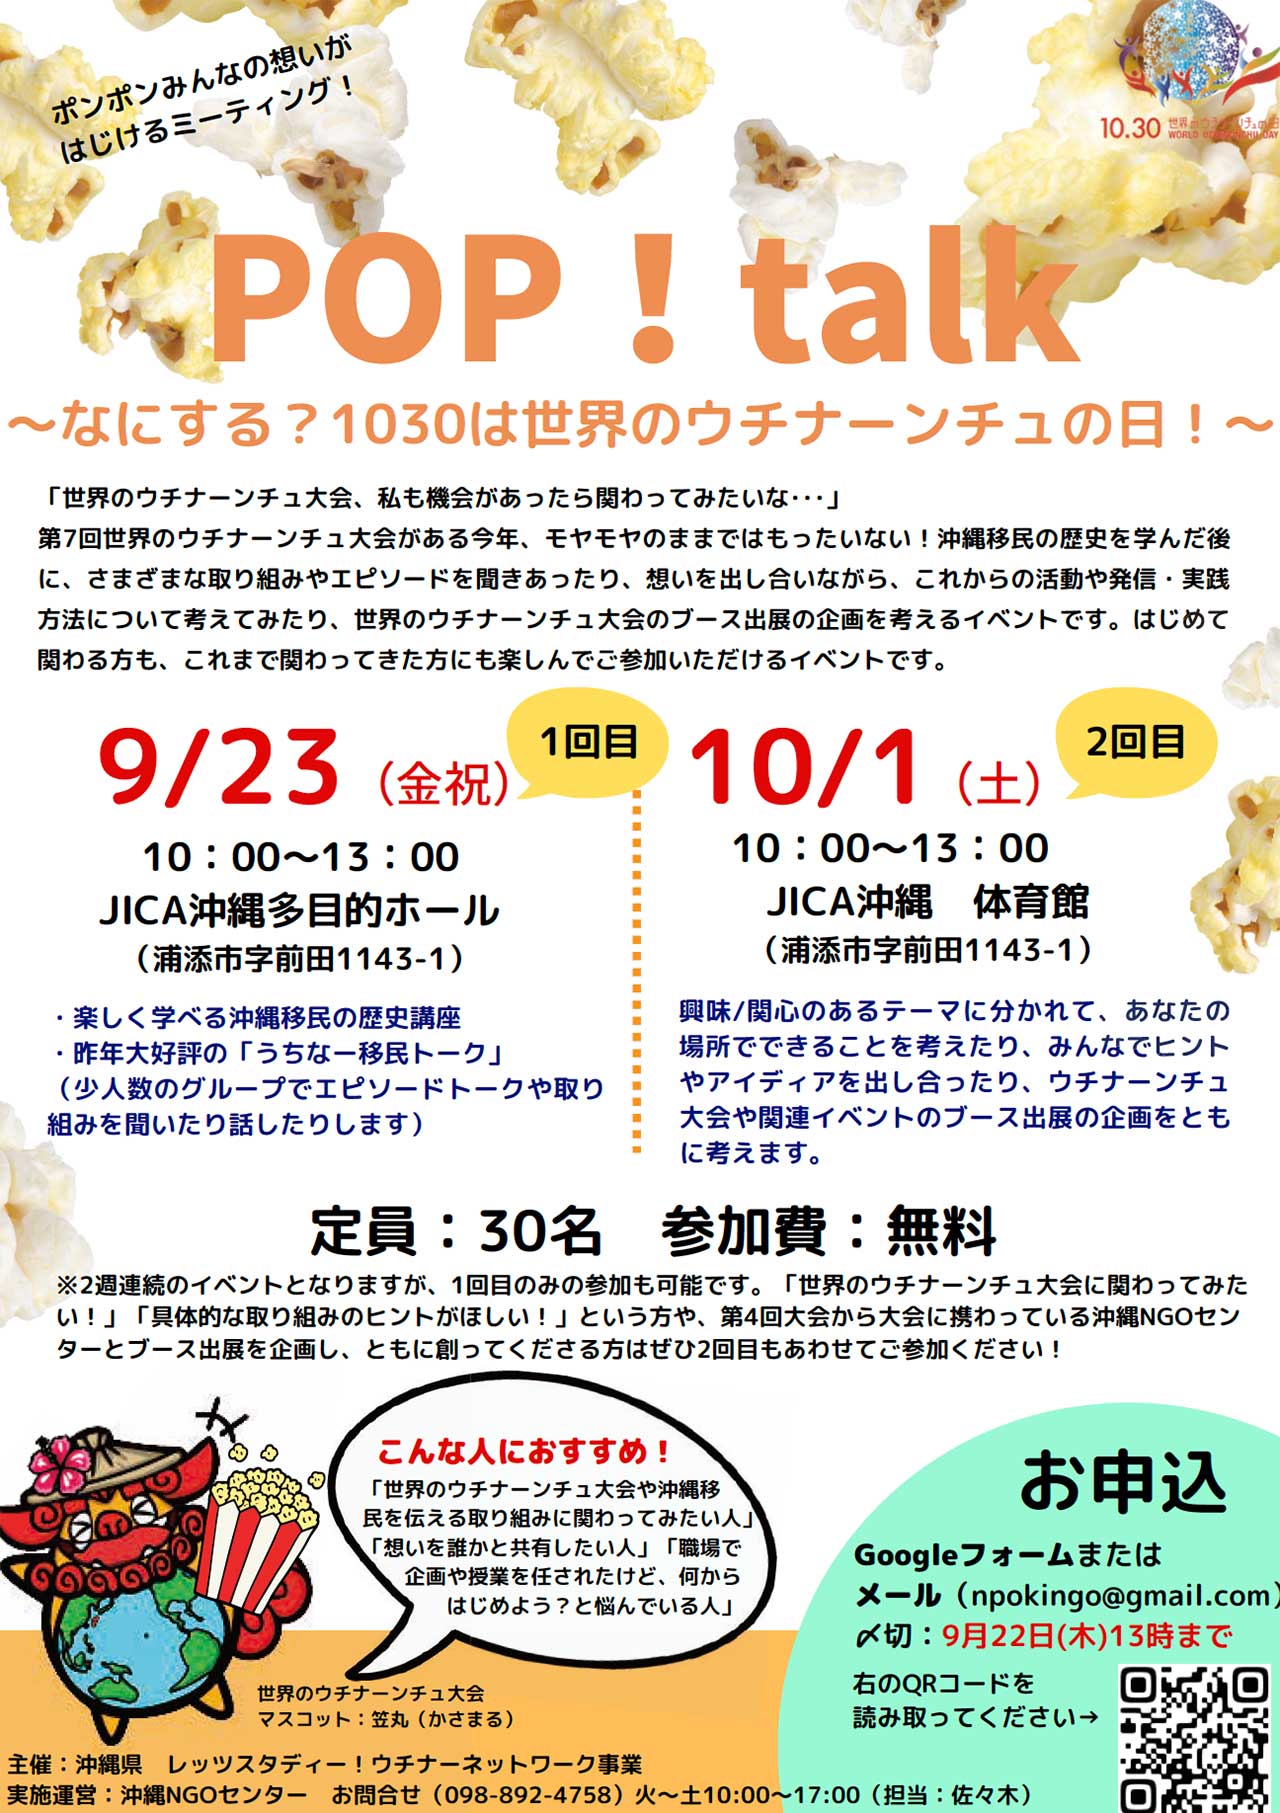 POP!talk